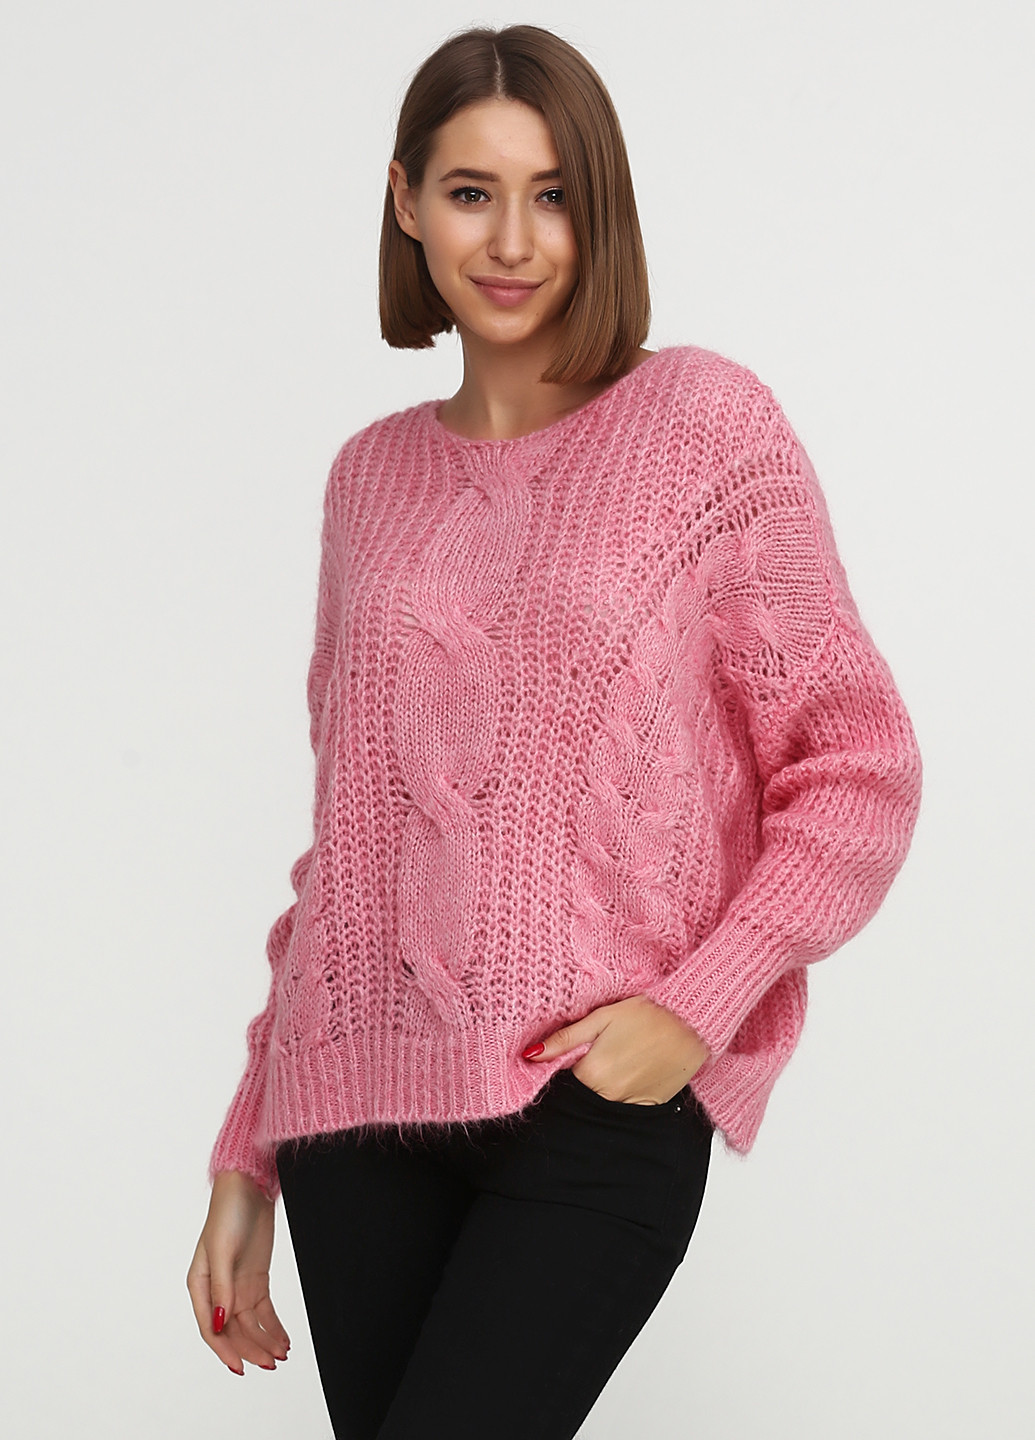 Светло-розовый демисезонный джемпер джемпер Alpini Knitwear